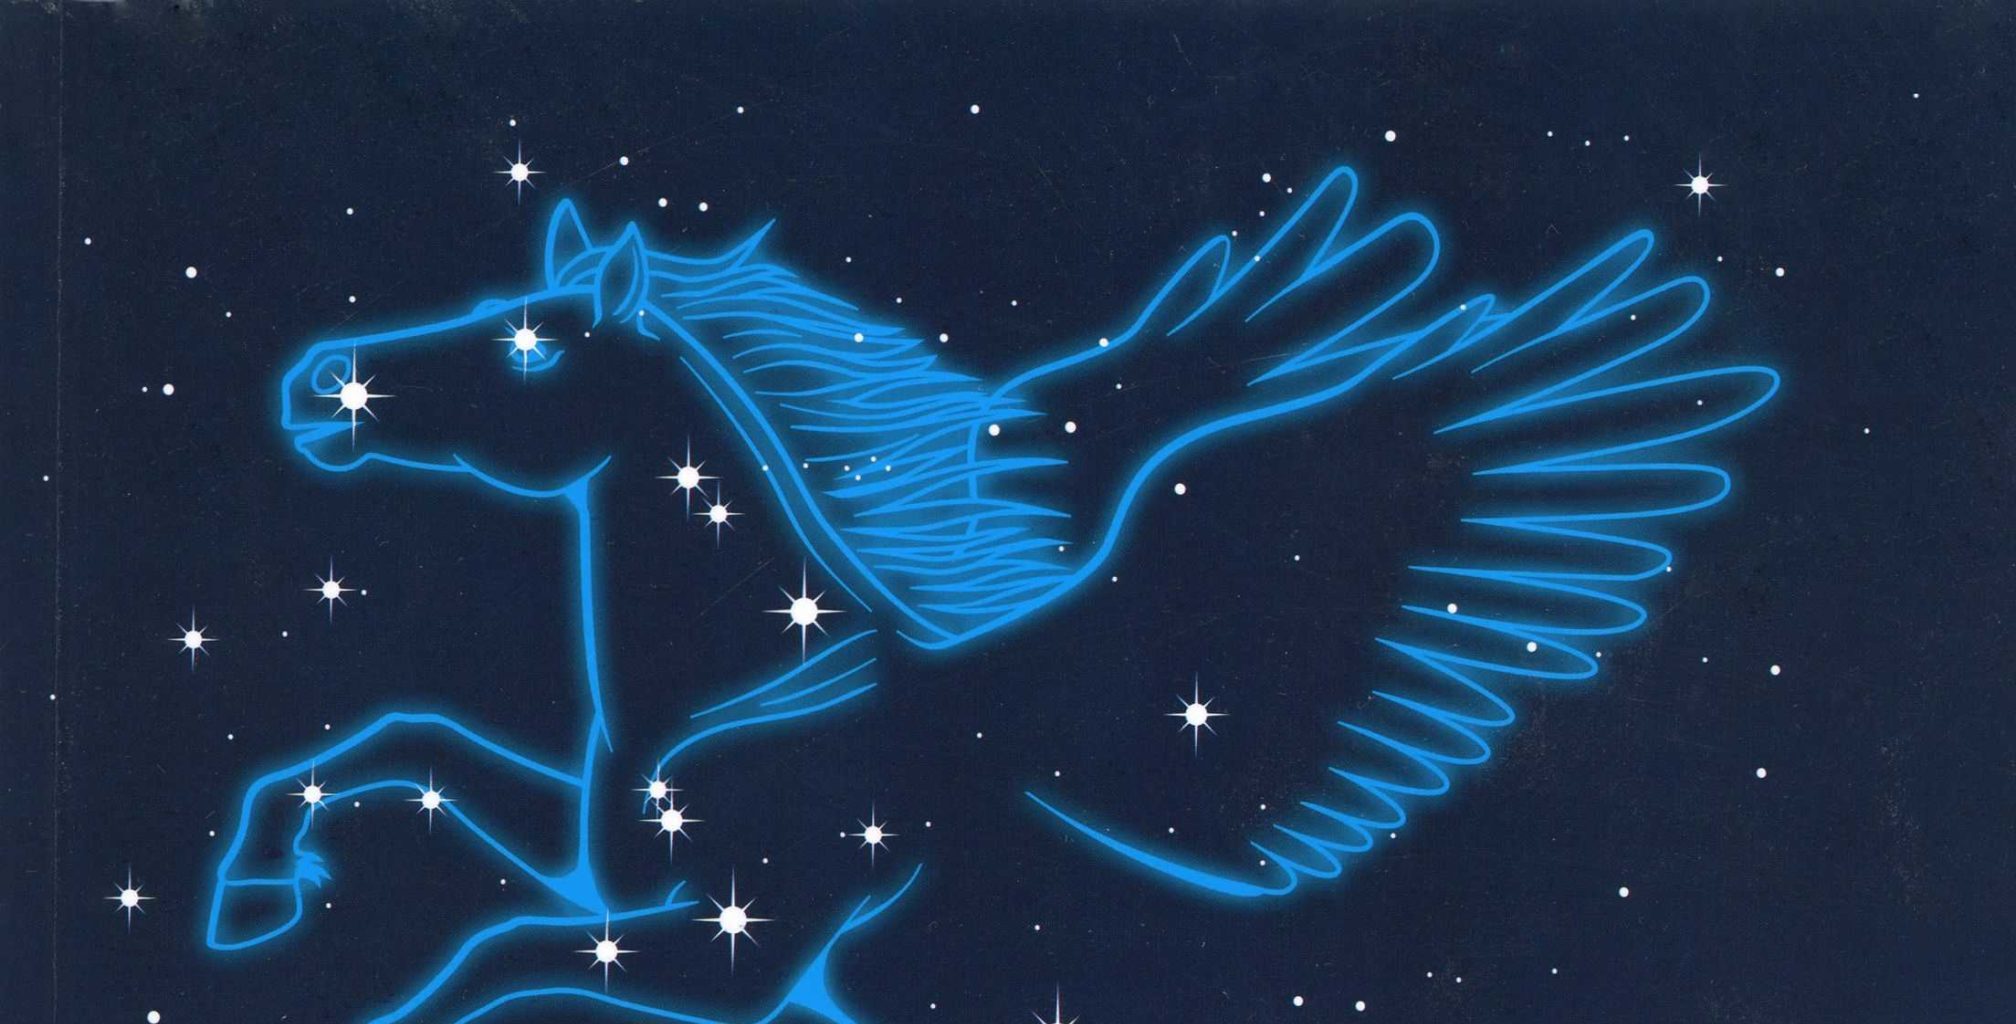 paz aborto 945 Un paseo por las estrellas: una guía de las estrellas, las constelaciones y  sus leyendas. De Milton D. Heifetz y Wil Tirion - Fundación Descubre